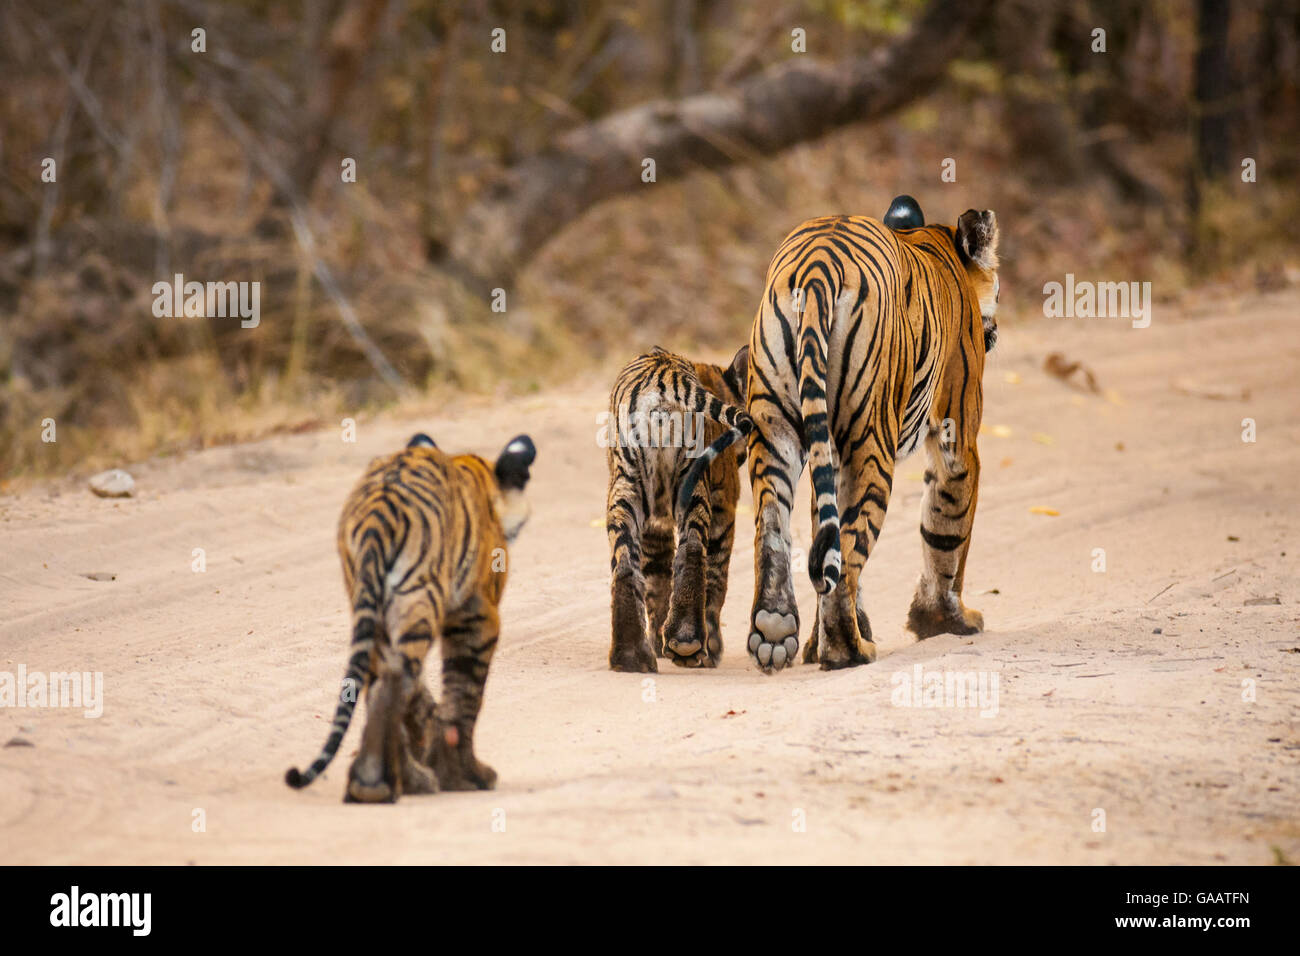 Bengal tiger (Panthera tigris) cubs following their mother, Bandhavgarh National Park, India. Stock Photo